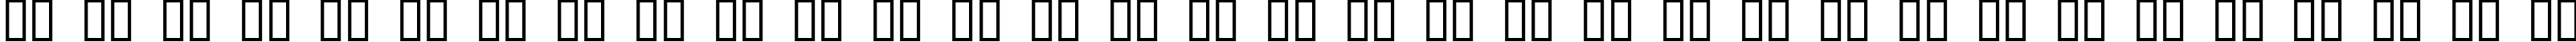 Пример написания русского алфавита шрифтом ButtonButton AOE